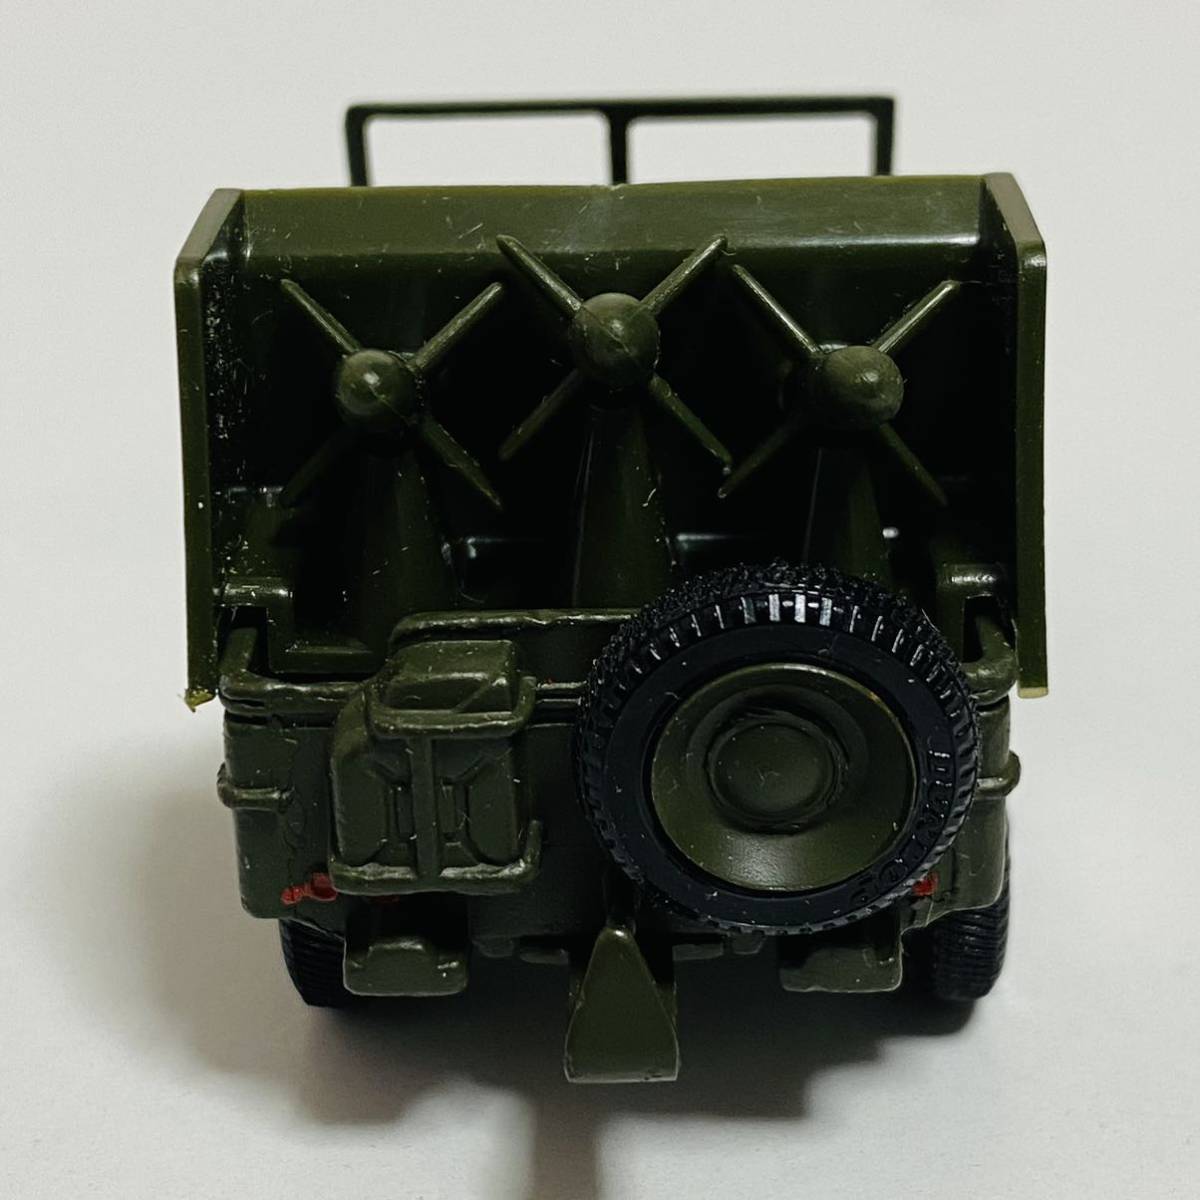 [ б/у товар ]DINKY TOYS Dinky игрушки 828 JEEP PORTE-FUSEES SS10 Jeep миникар модель машина 